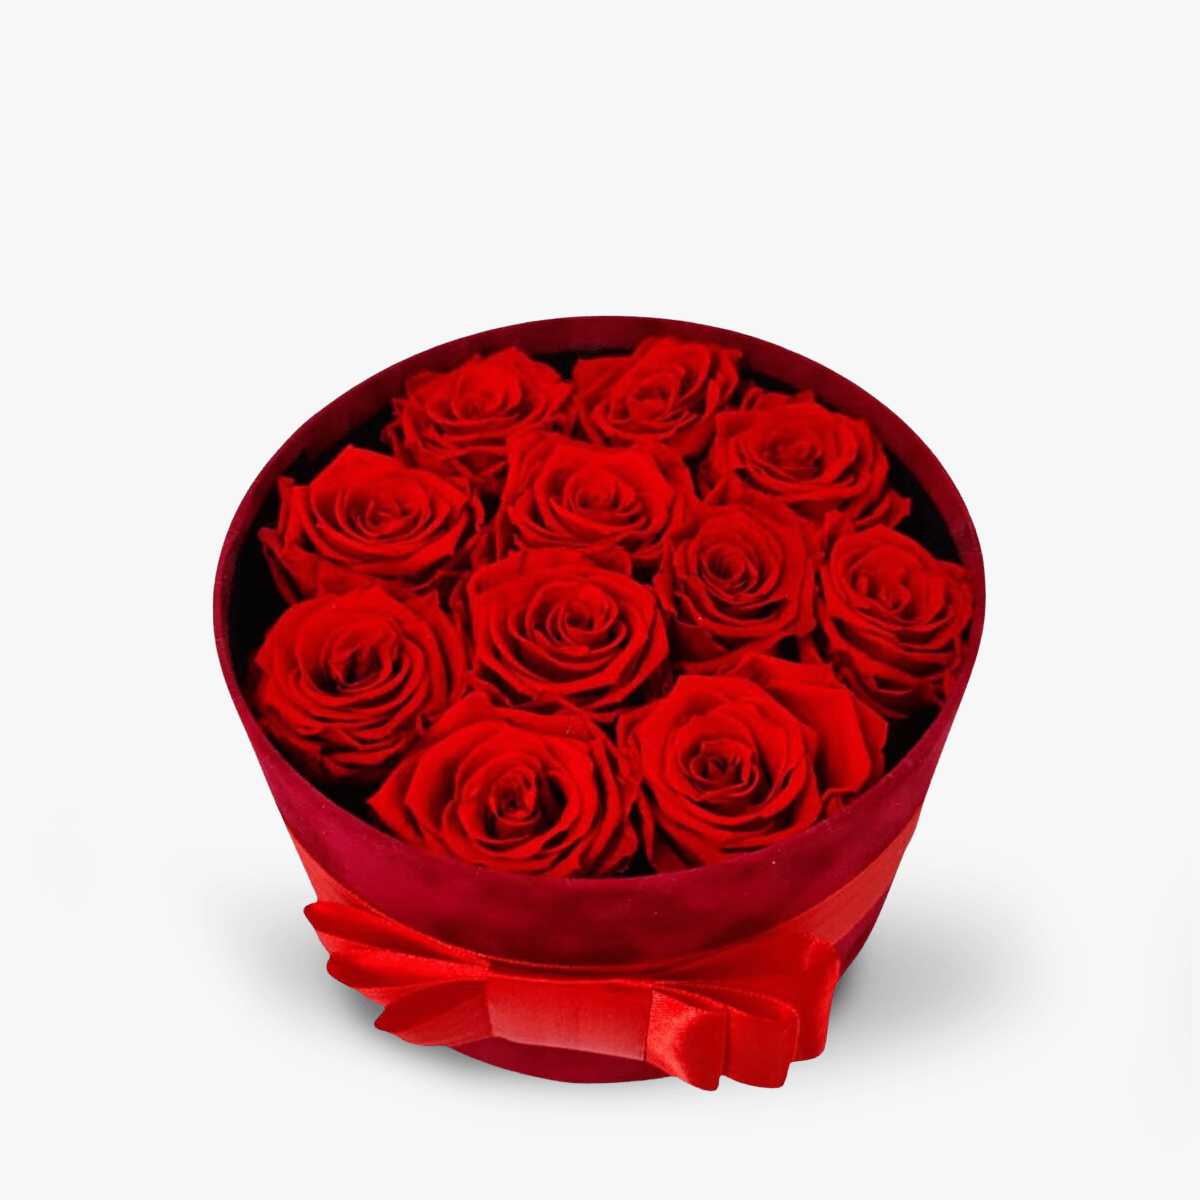 Cutie cu 11 trandafiri rosii, criogenati – Standard criogenati imagine 2022